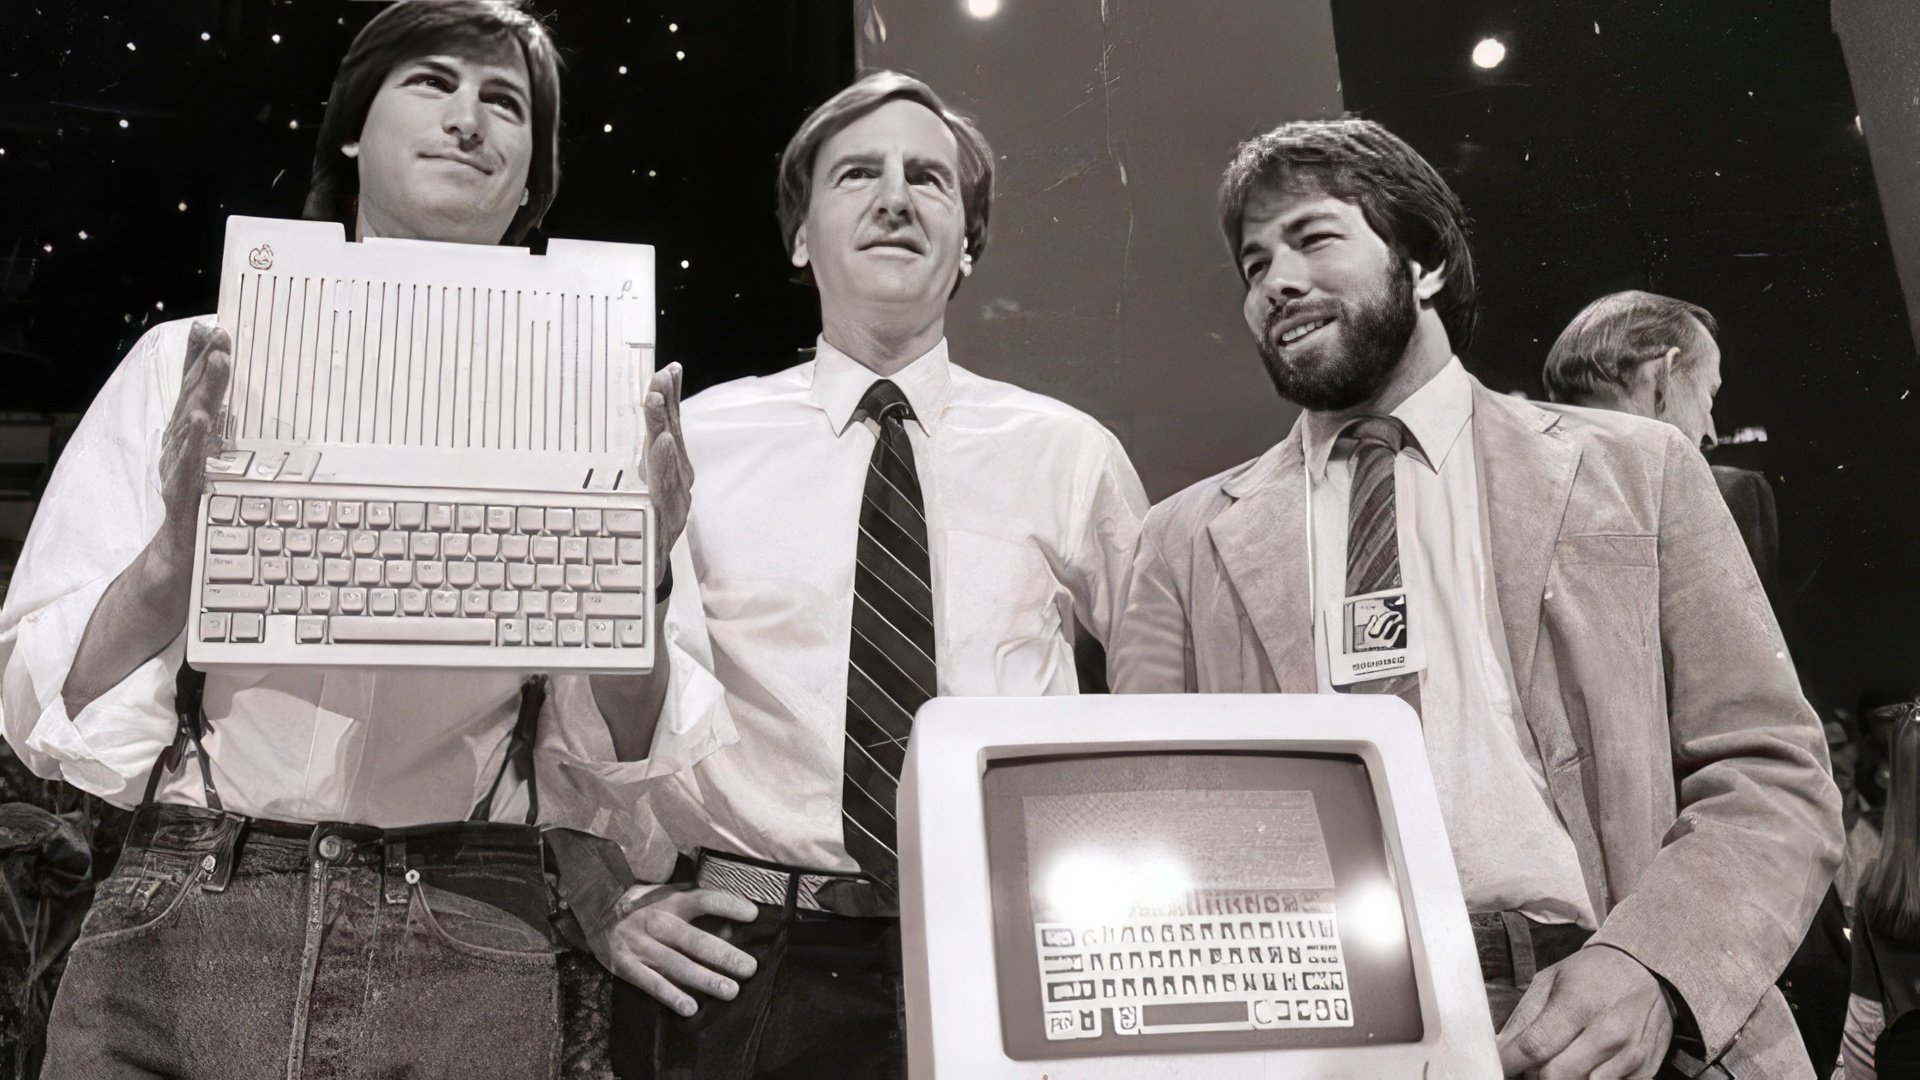 Steve Jobs, John Sculley, and Steve Wozniak